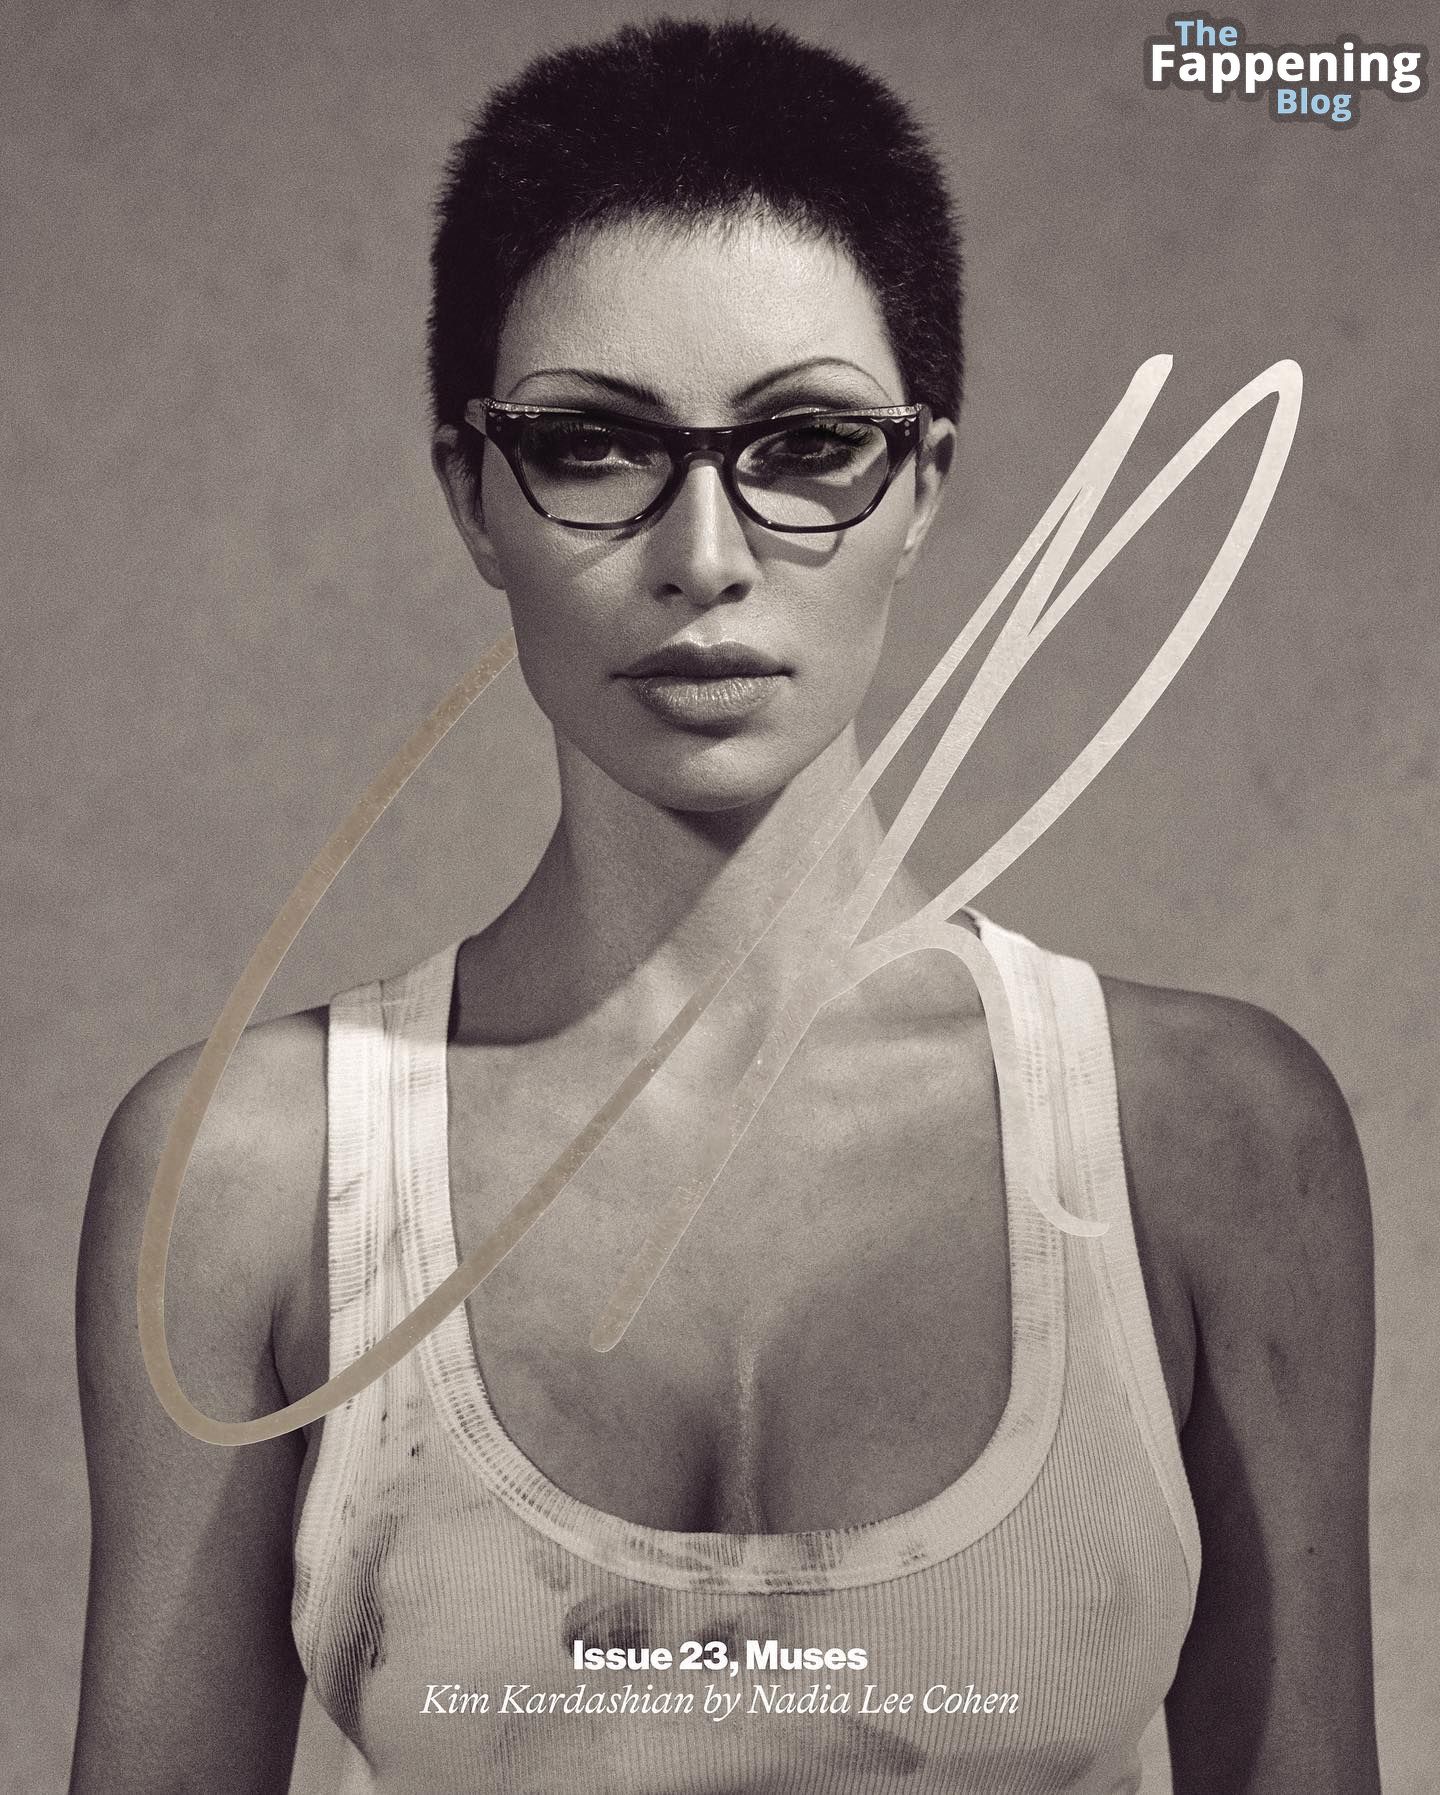 Kim-Kardashian-Sexy-5-The-Fappening-Blog-5.jpg